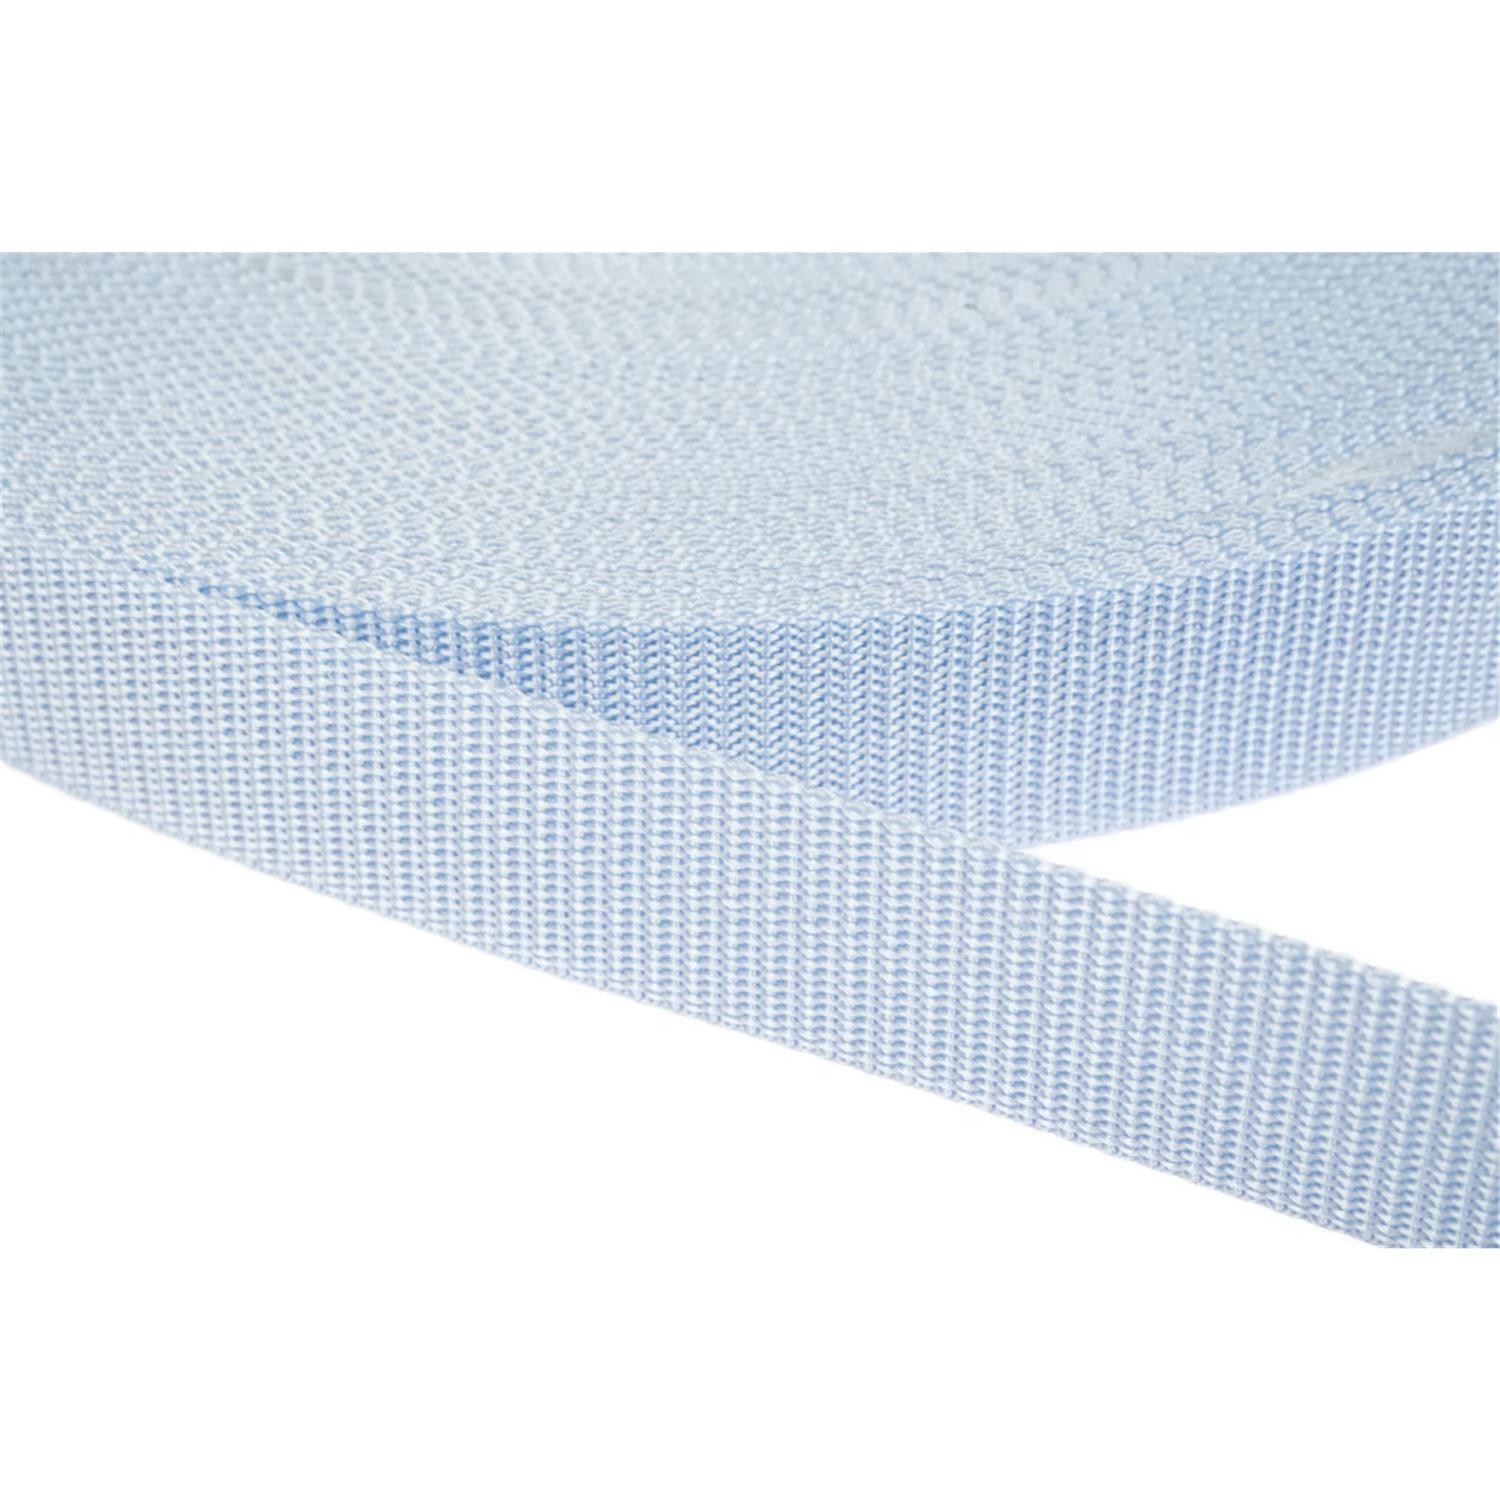 Gurtband 20mm breit aus Polypropylen in 41 Farben 25 - hellblau 06 Meter